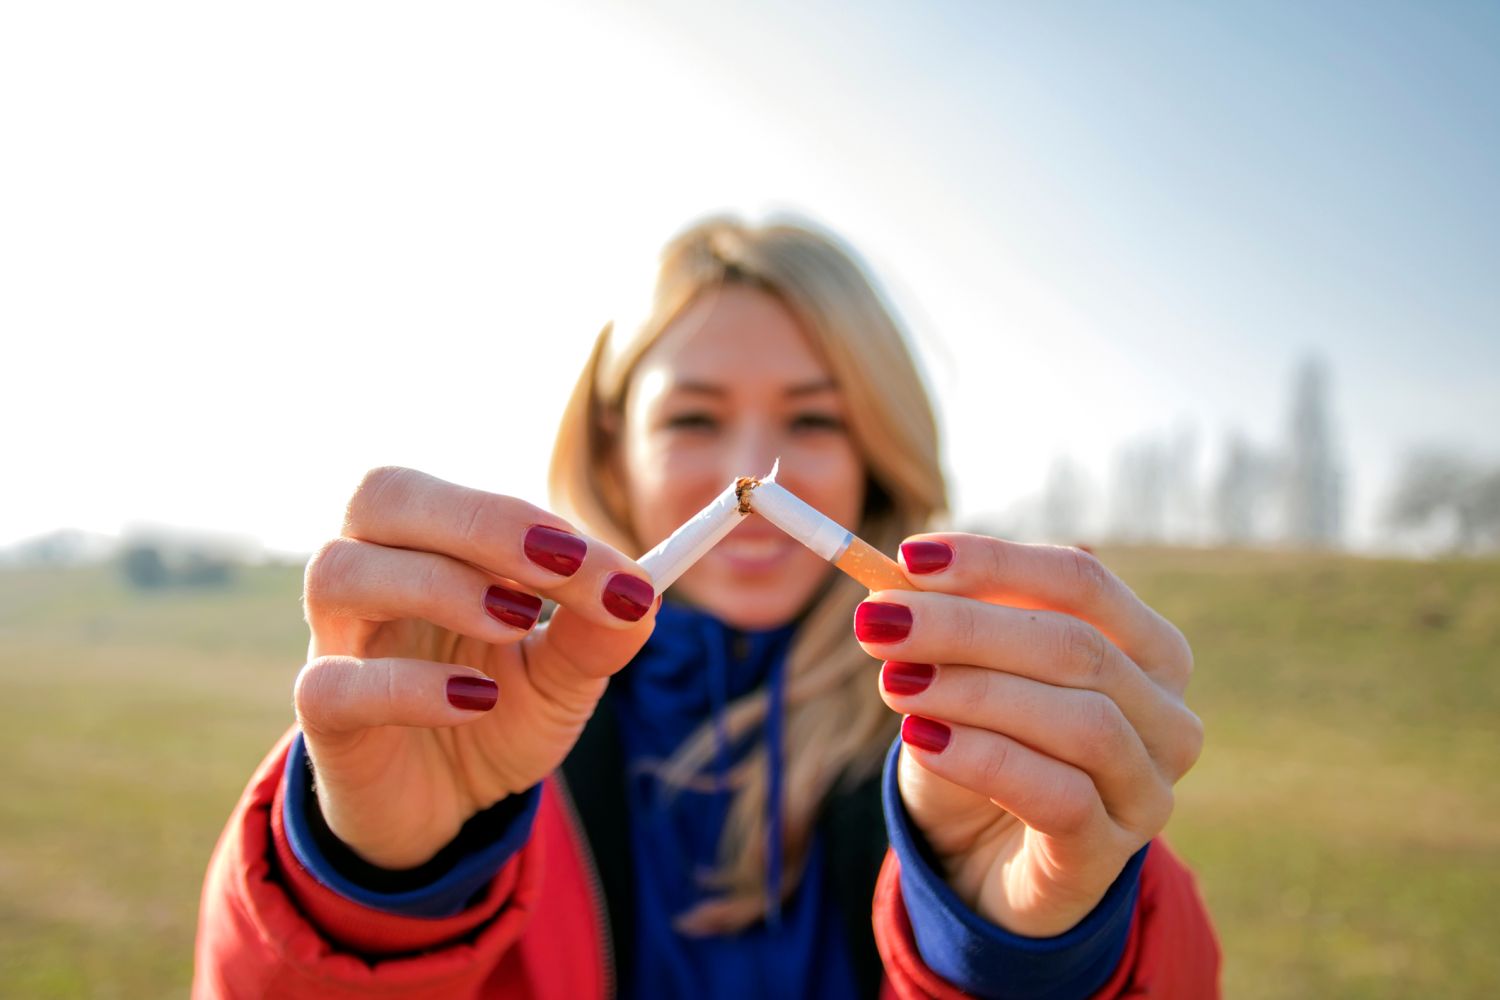 Mit dem Rauchen aufhören: So klappt es jetzt sofort! | Sprühen NicoZero 2021